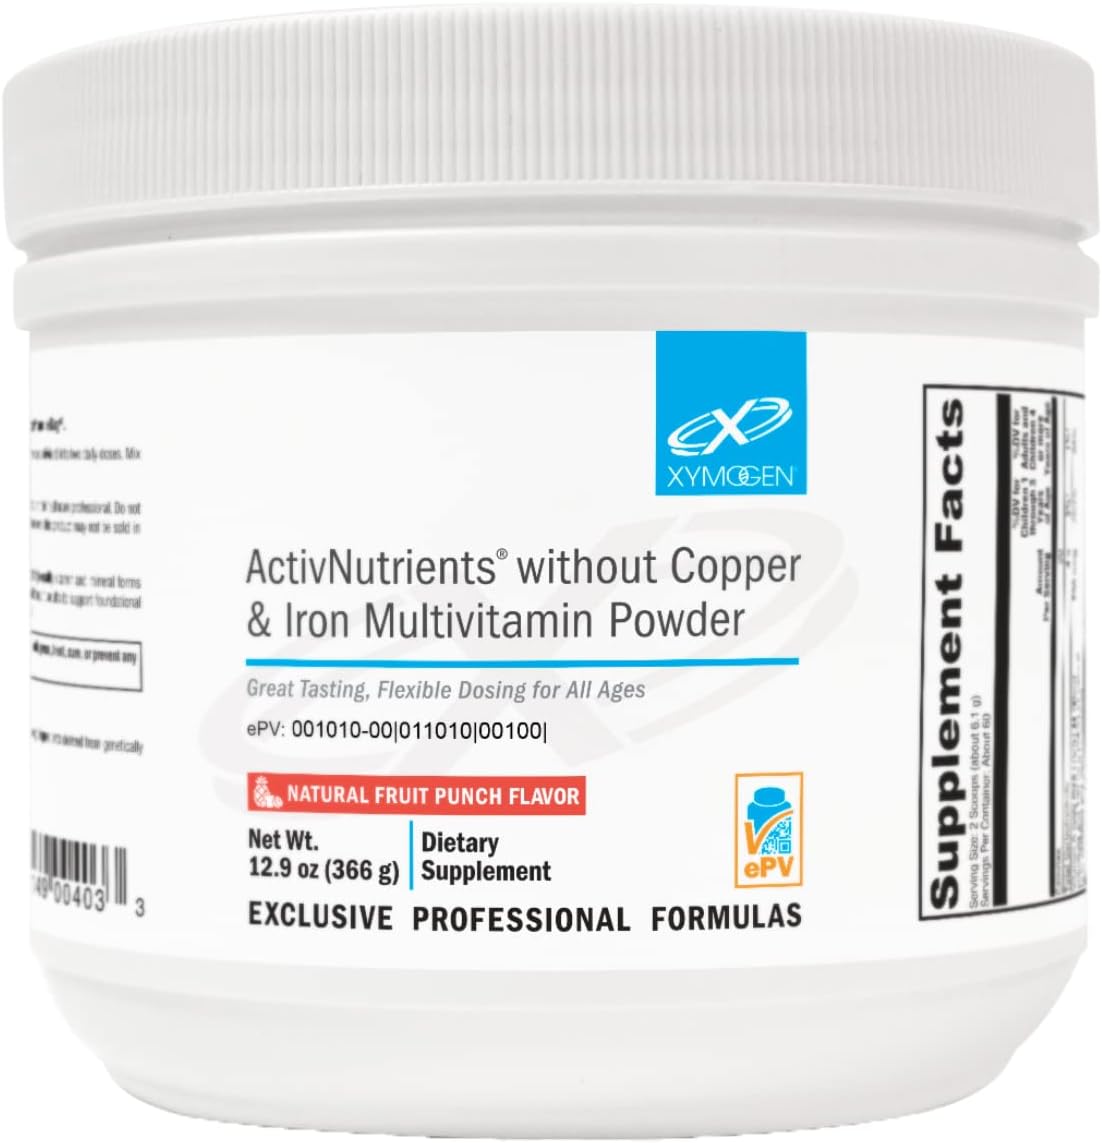 XYMOGEN ActivNutrients Without Copper & Iron Multivitamin Powder - Fru